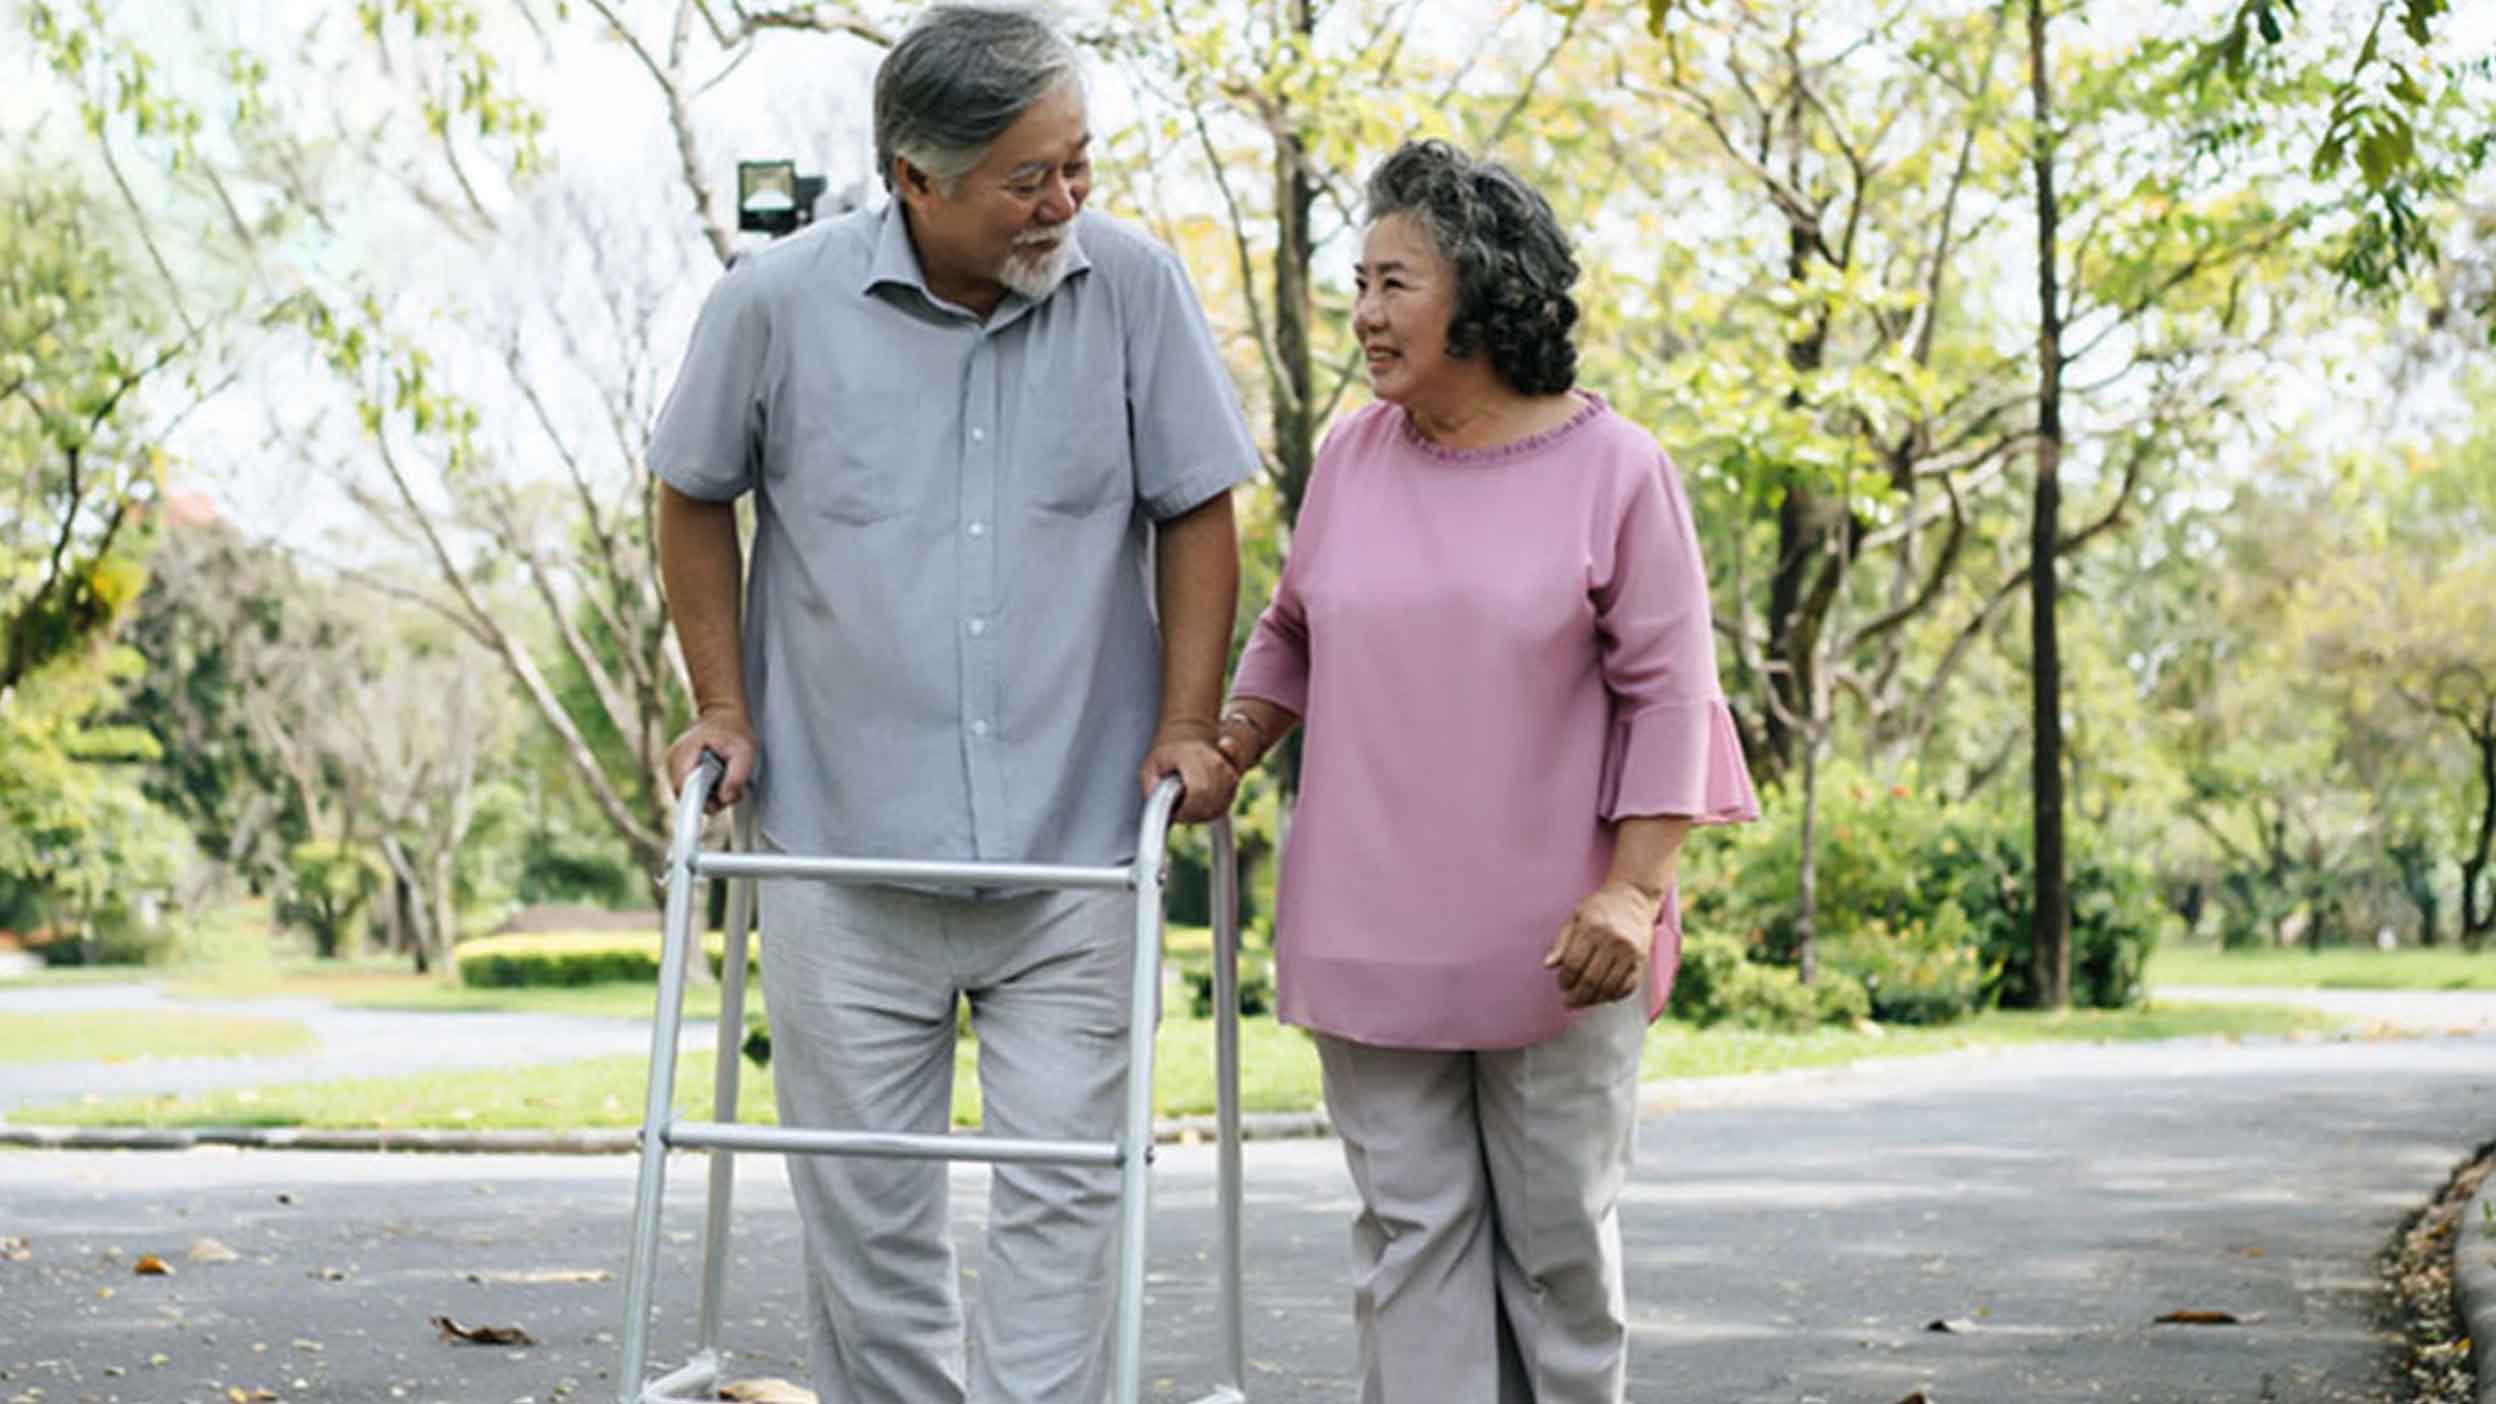 Informasi Kesehatan_2496x1404Langkah-langkah Mencegah Resiko Terjadinya Jatuh pada Senior